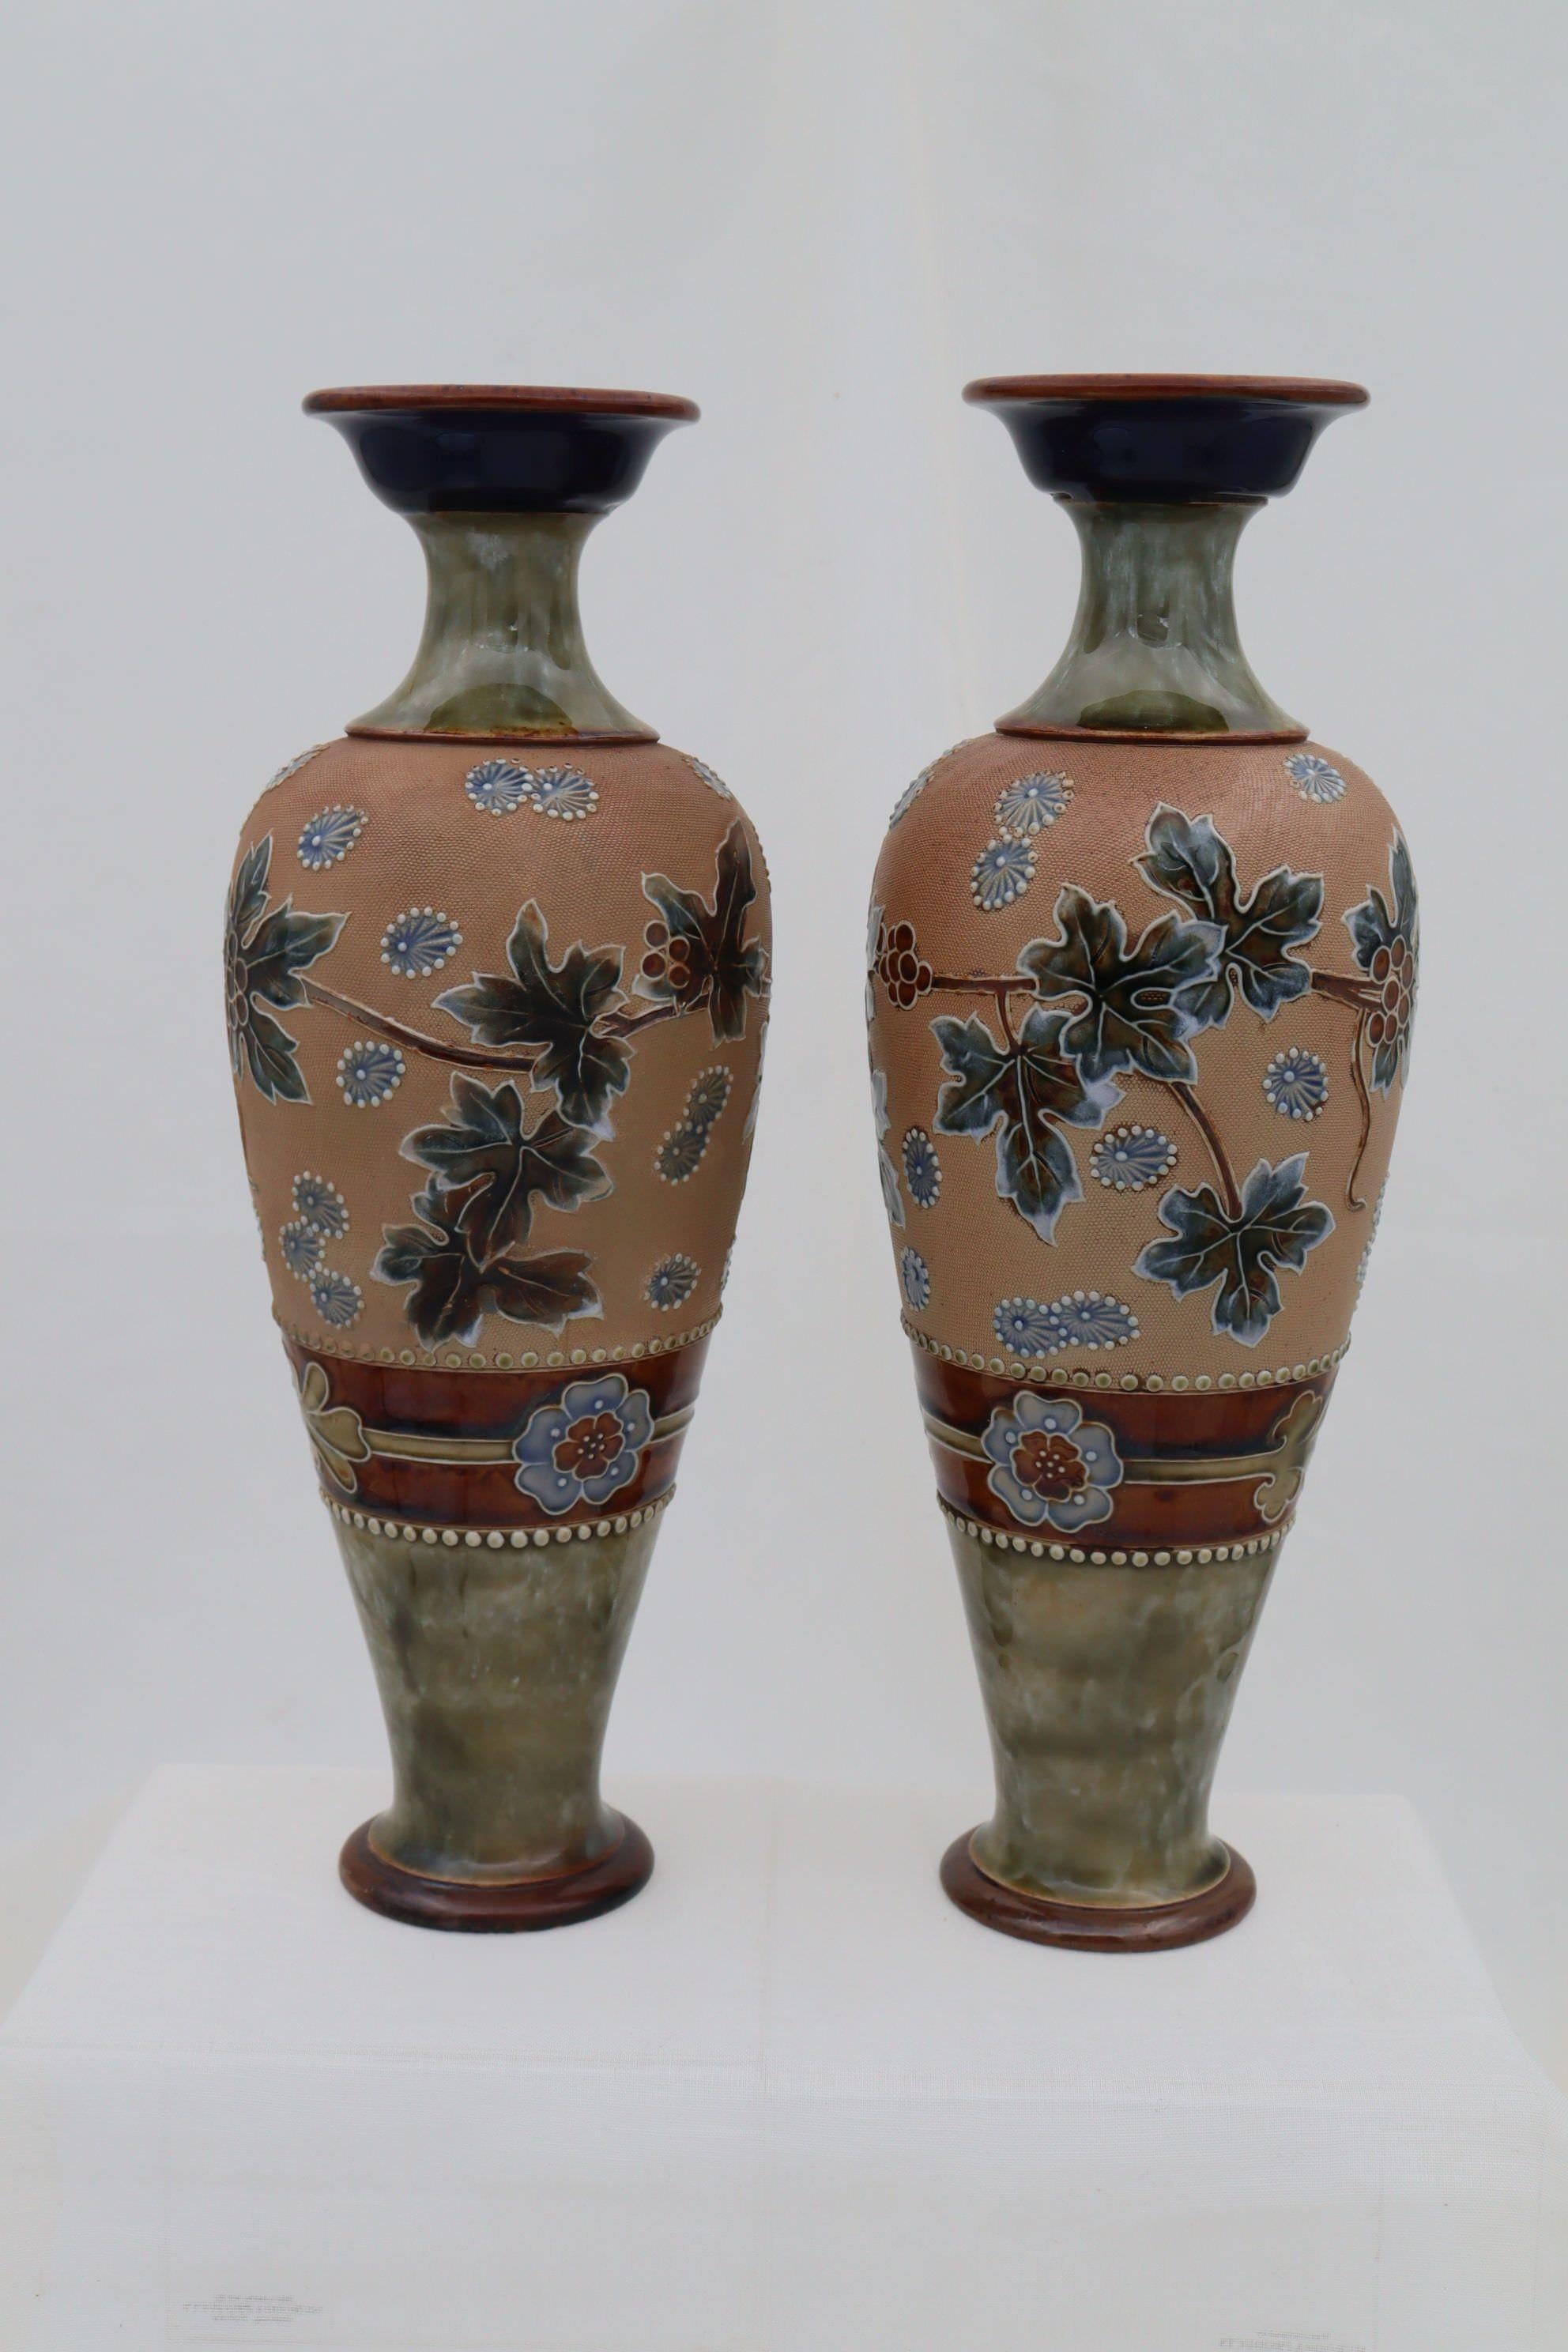 Dieses Paar balusterförmiger Royal Doulton-Vasen ist in der von Doulton patentierten Chine Ware-Manier dekoriert. Das Doulton- und Slaters-Patent, auch bekannt als Chine-Ware, war ein Dekorationsverfahren, bei dem Stücke aus Leinen, Spitze, Netz